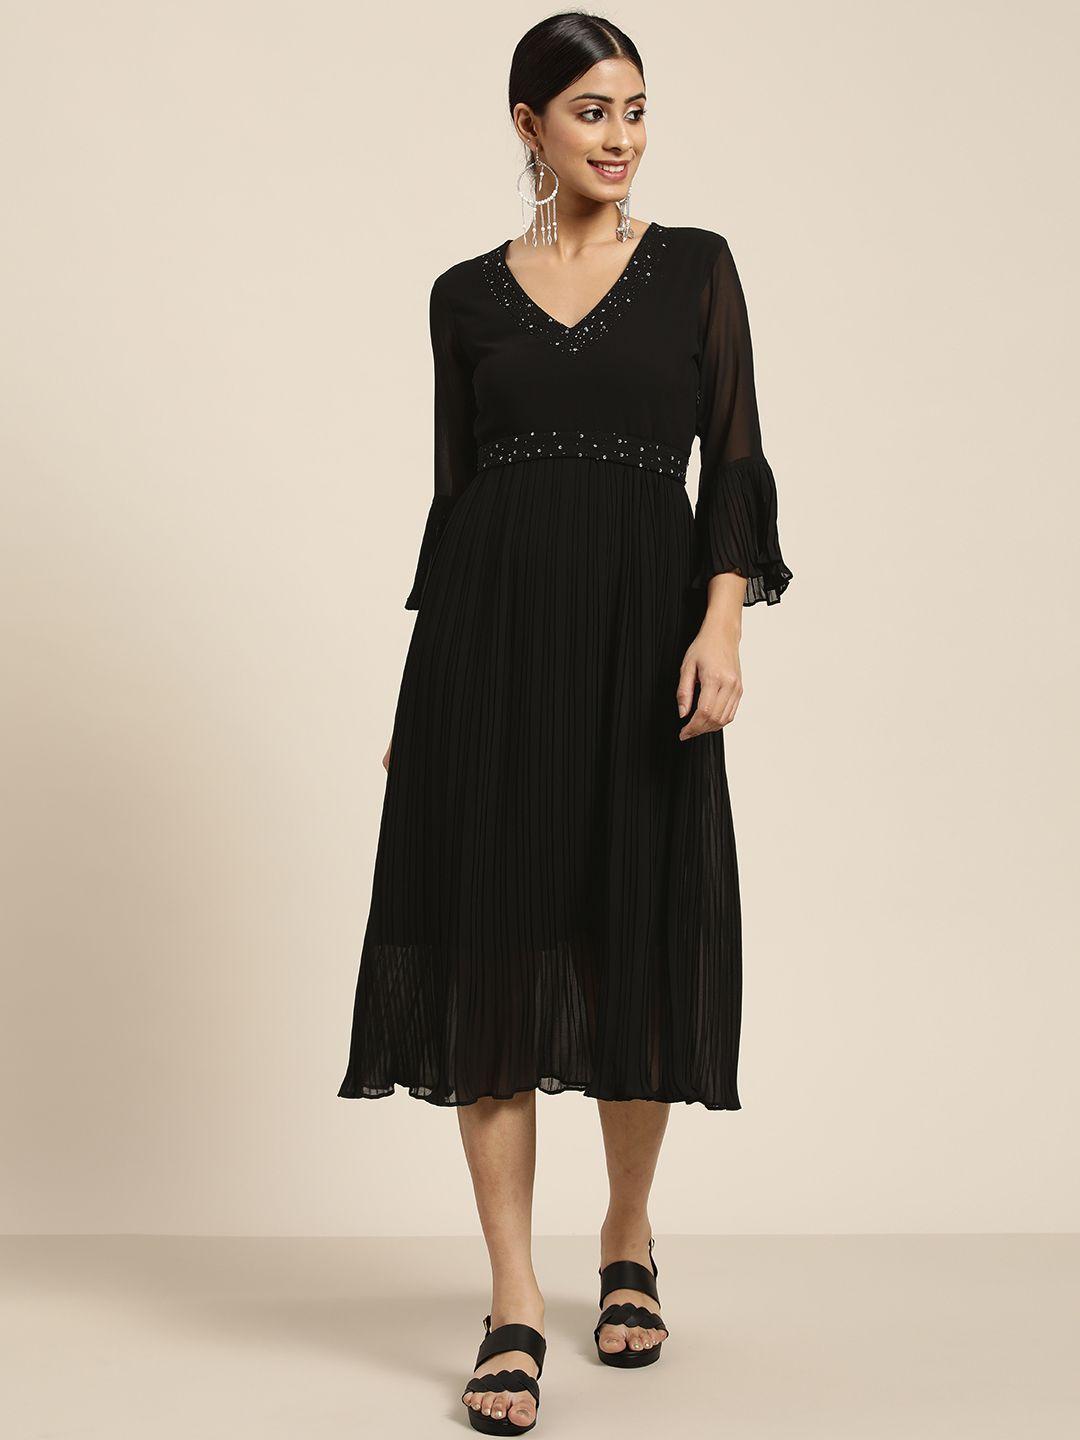 sangria-women-black-embellished-detail-a-line-dress-comes-with-a-belt